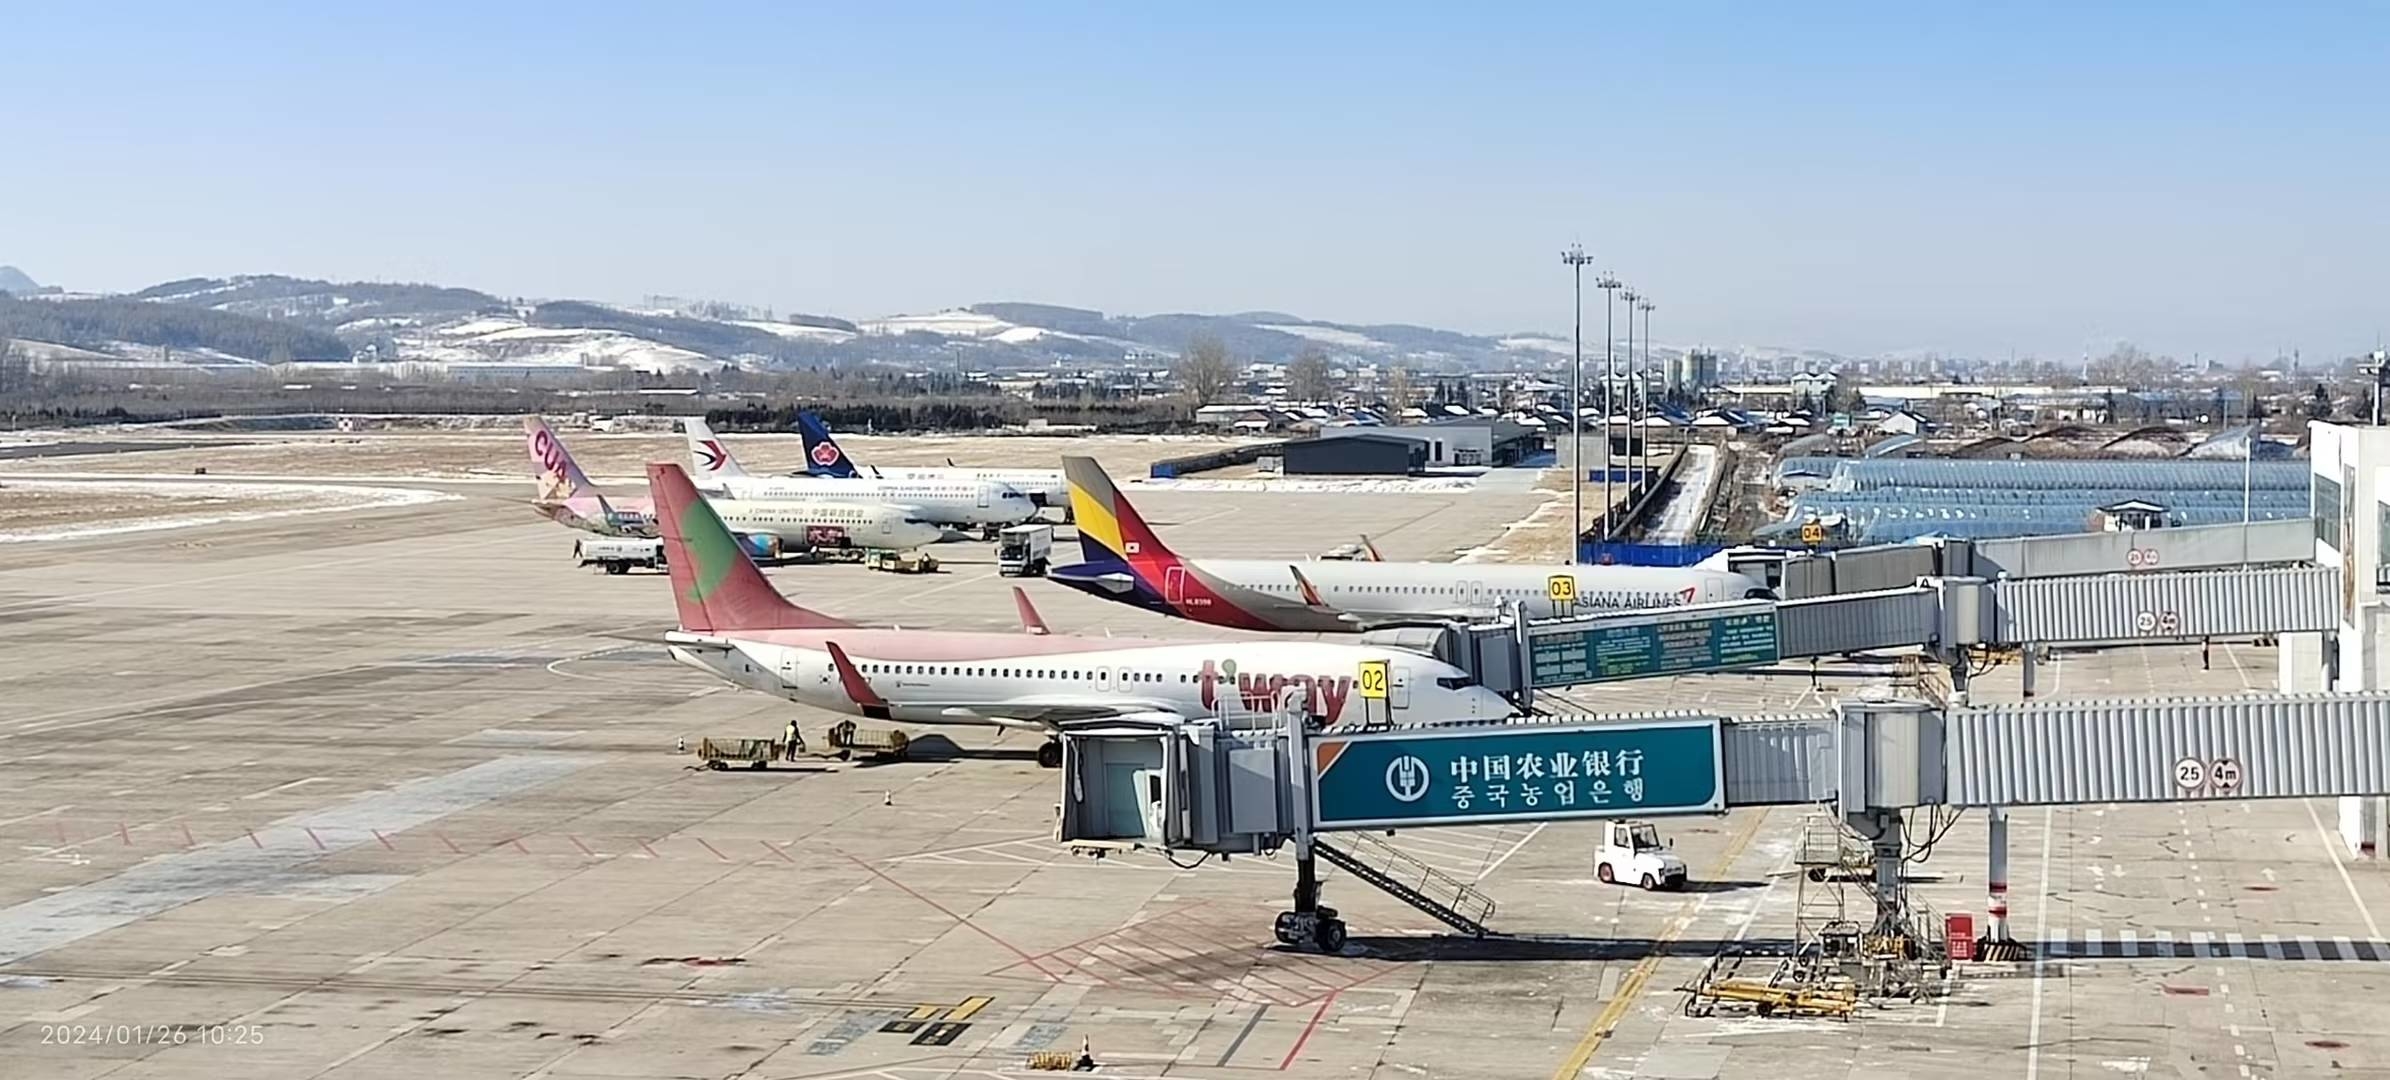 延吉机场单日旅客吞吐量再创历史新高